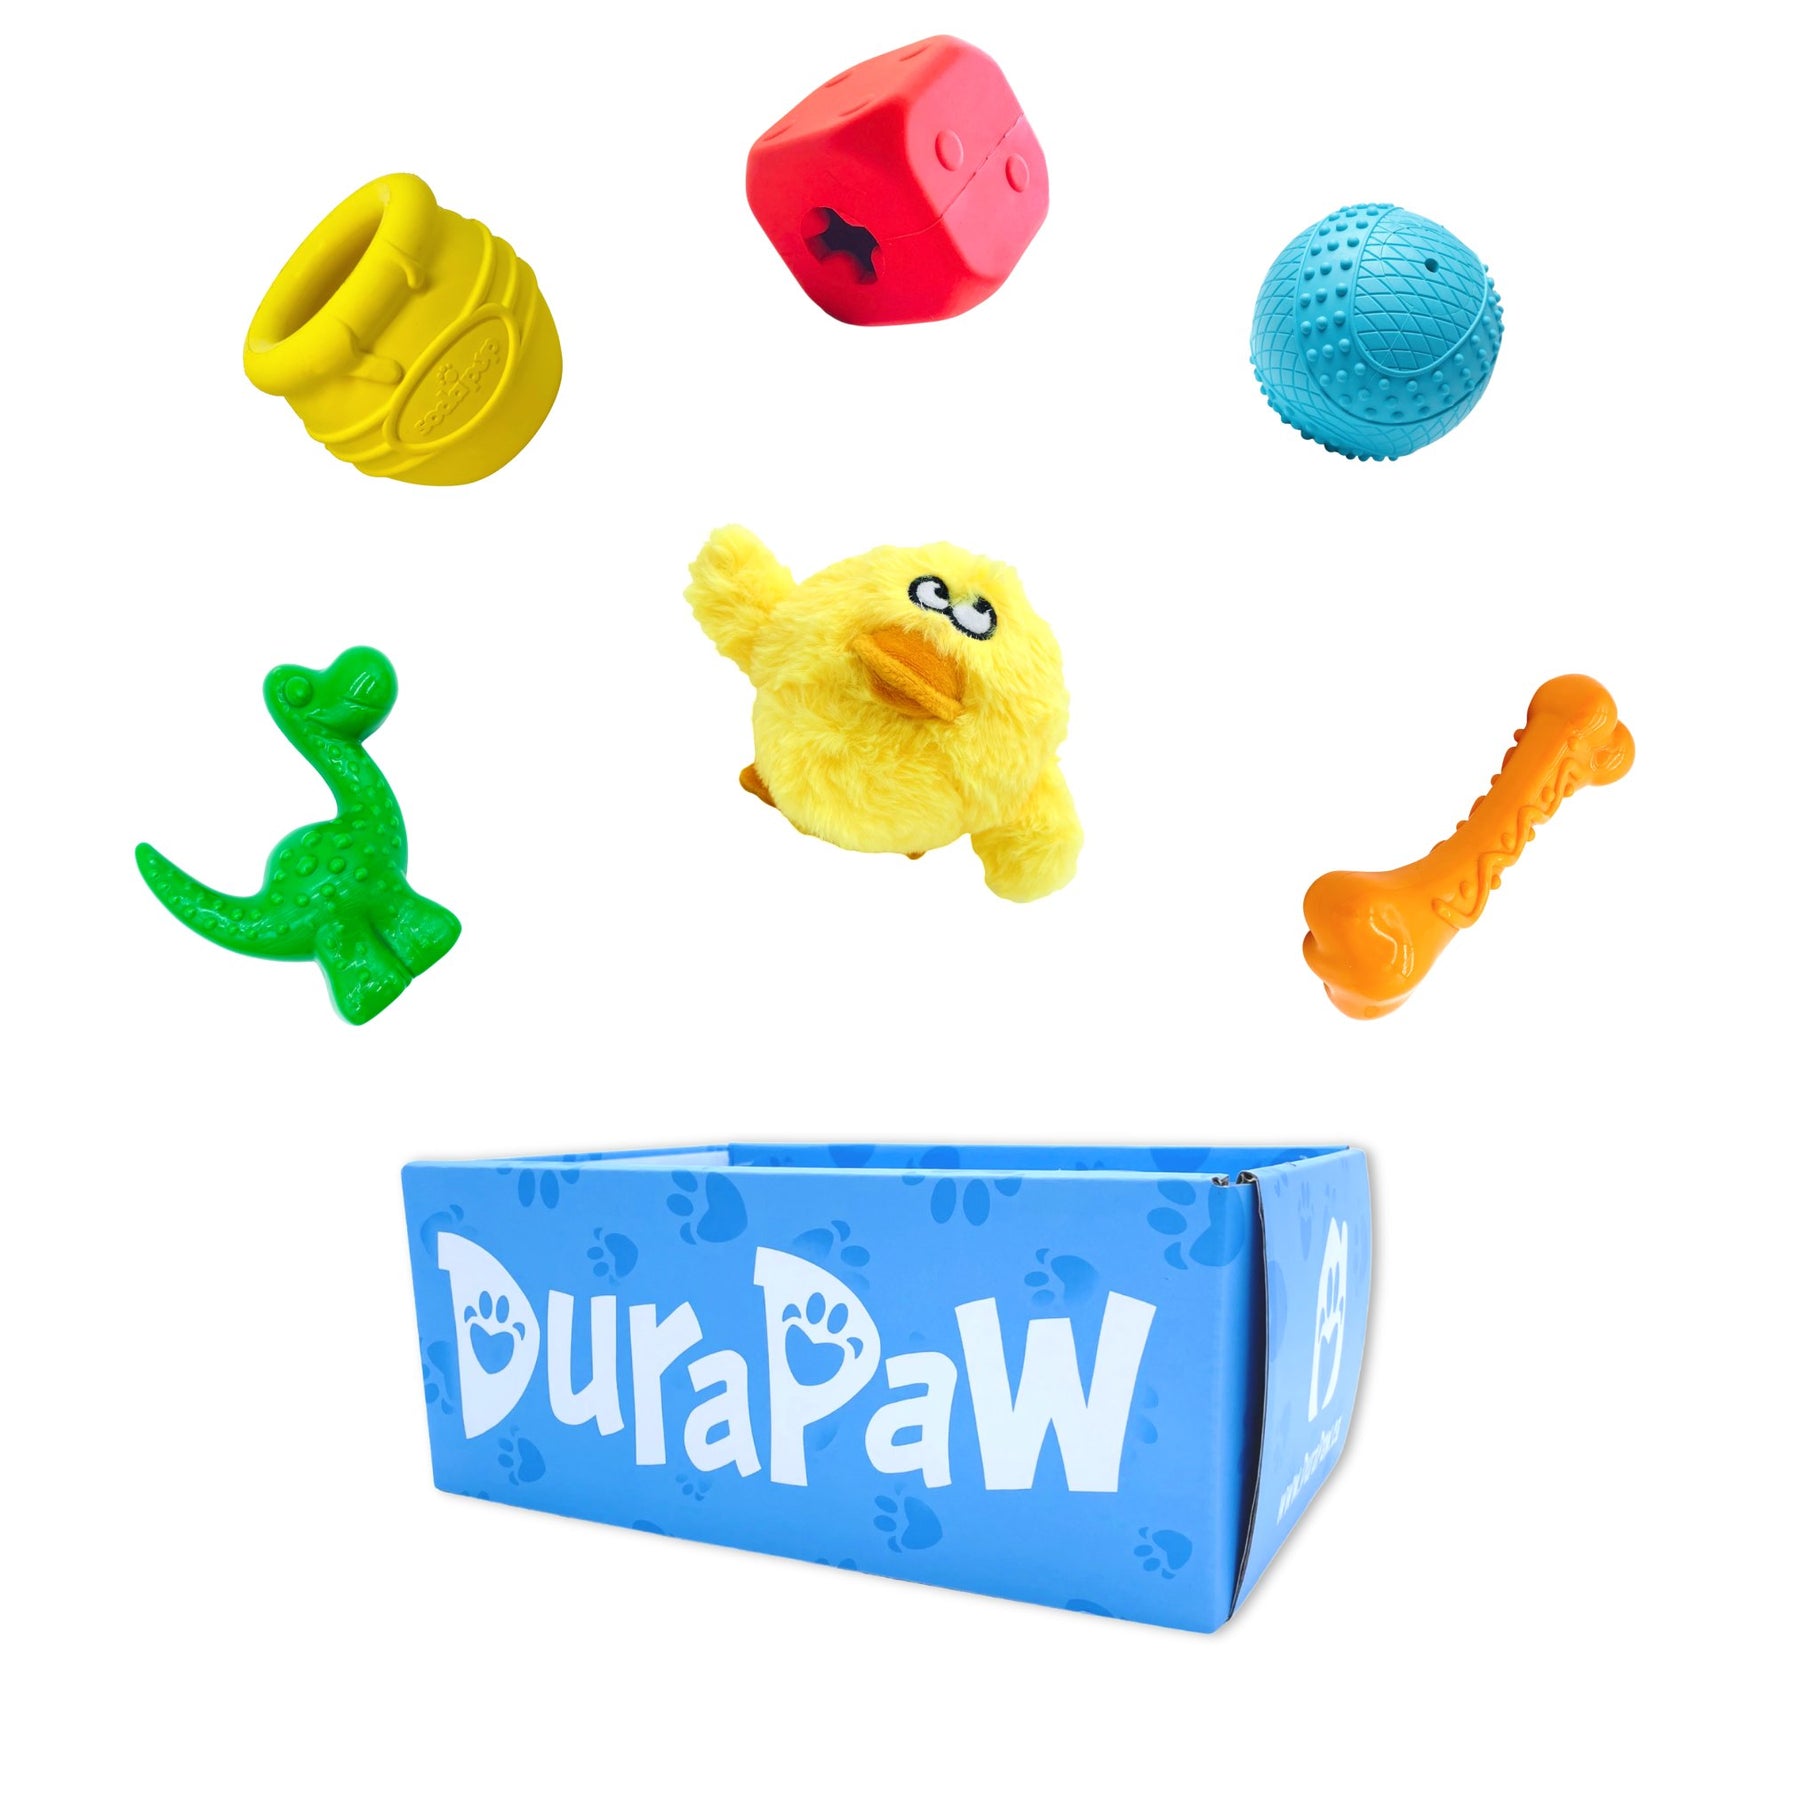 DuraPaw Mystery Dog Toy Box Canada